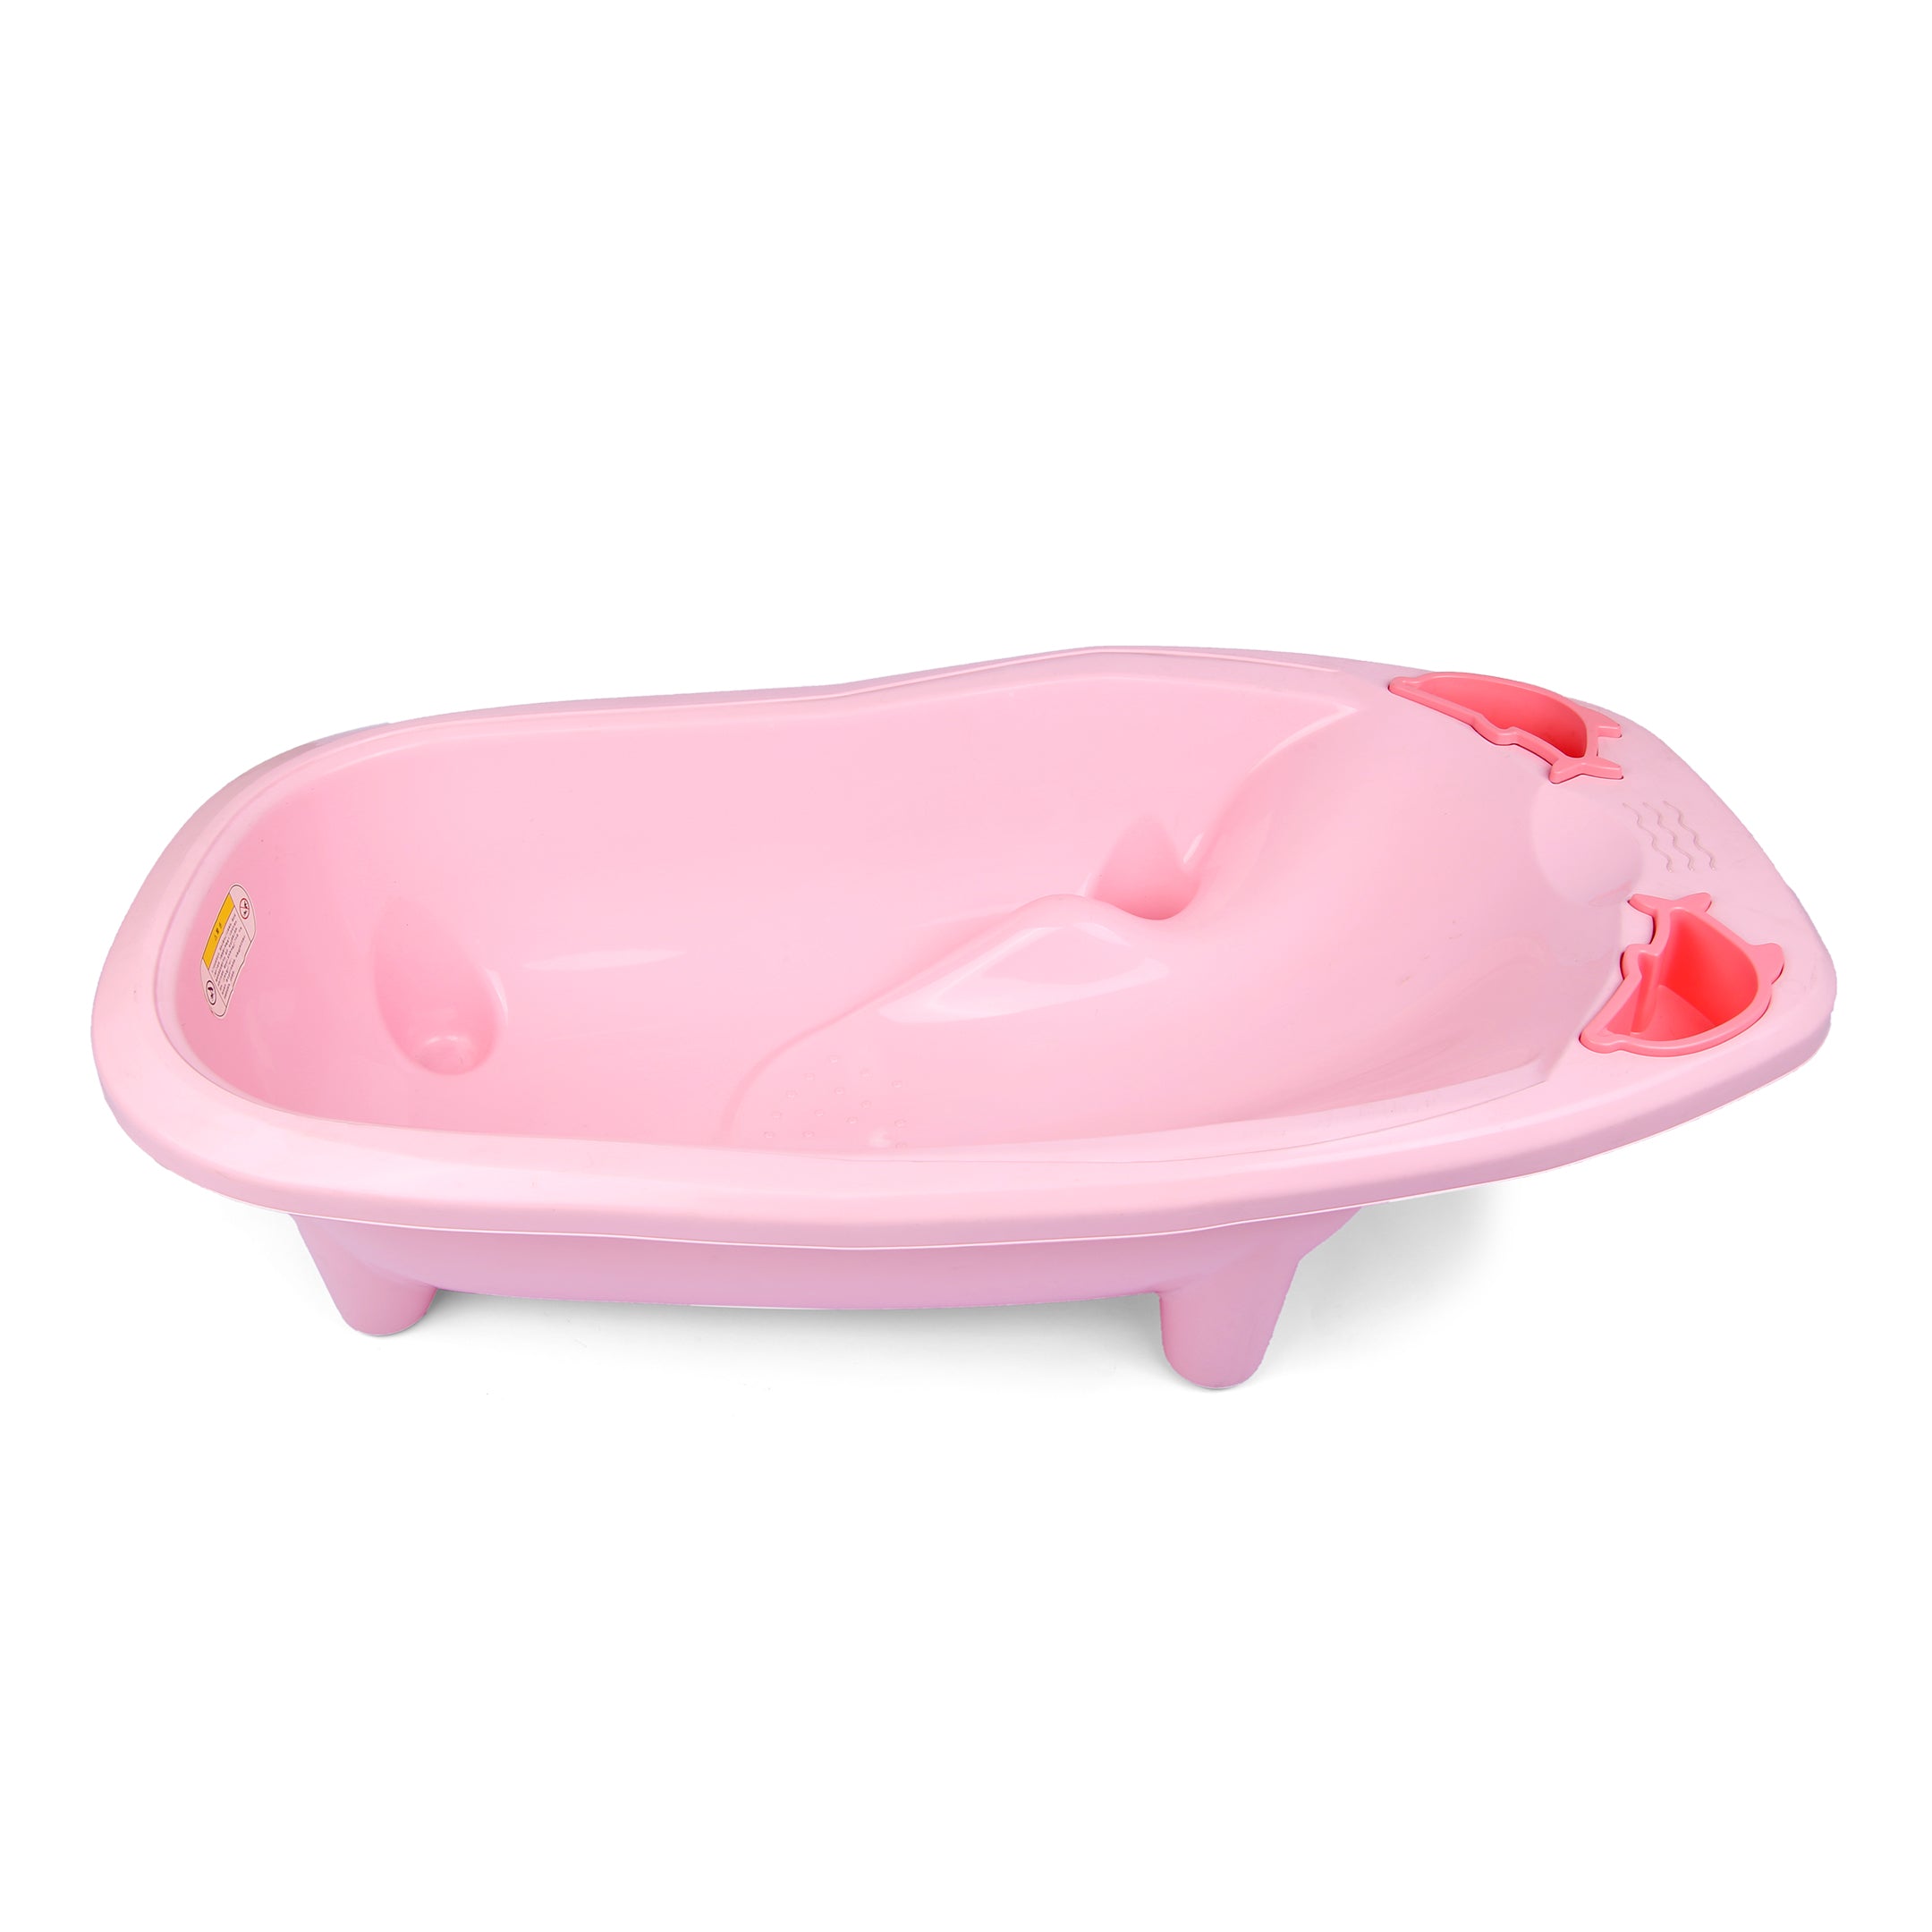 High-Quality Baby Bath Tub - Dolphin